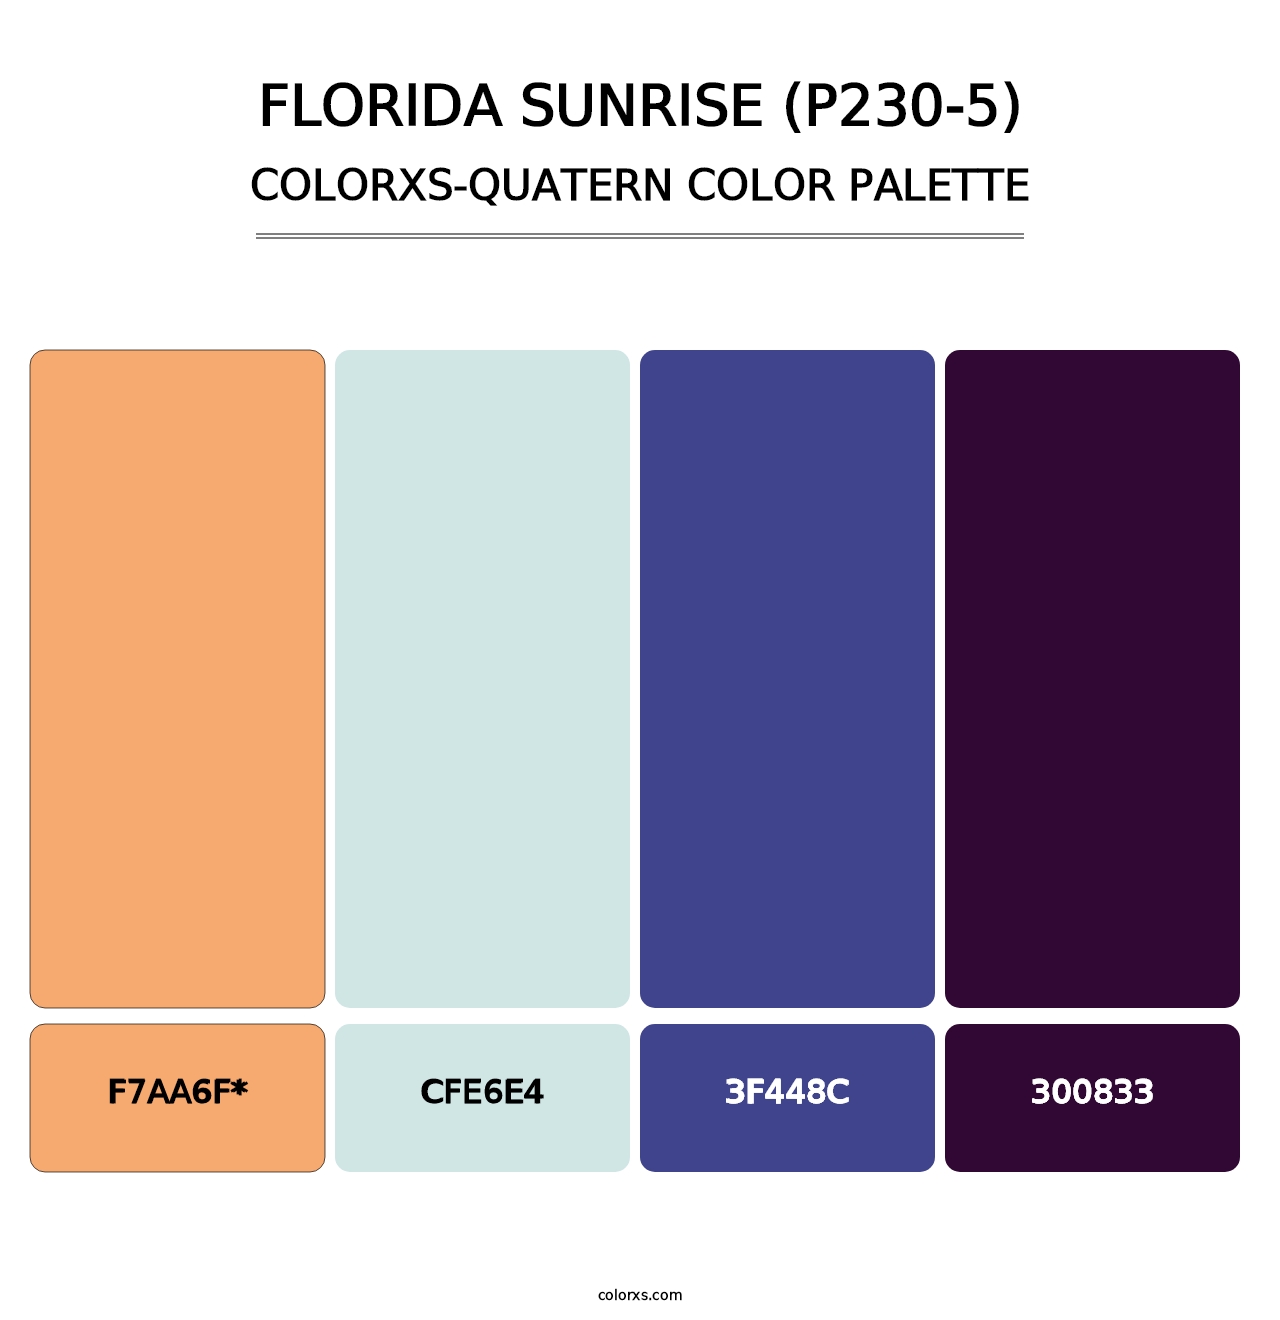 Florida Sunrise (P230-5) - Colorxs Quad Palette